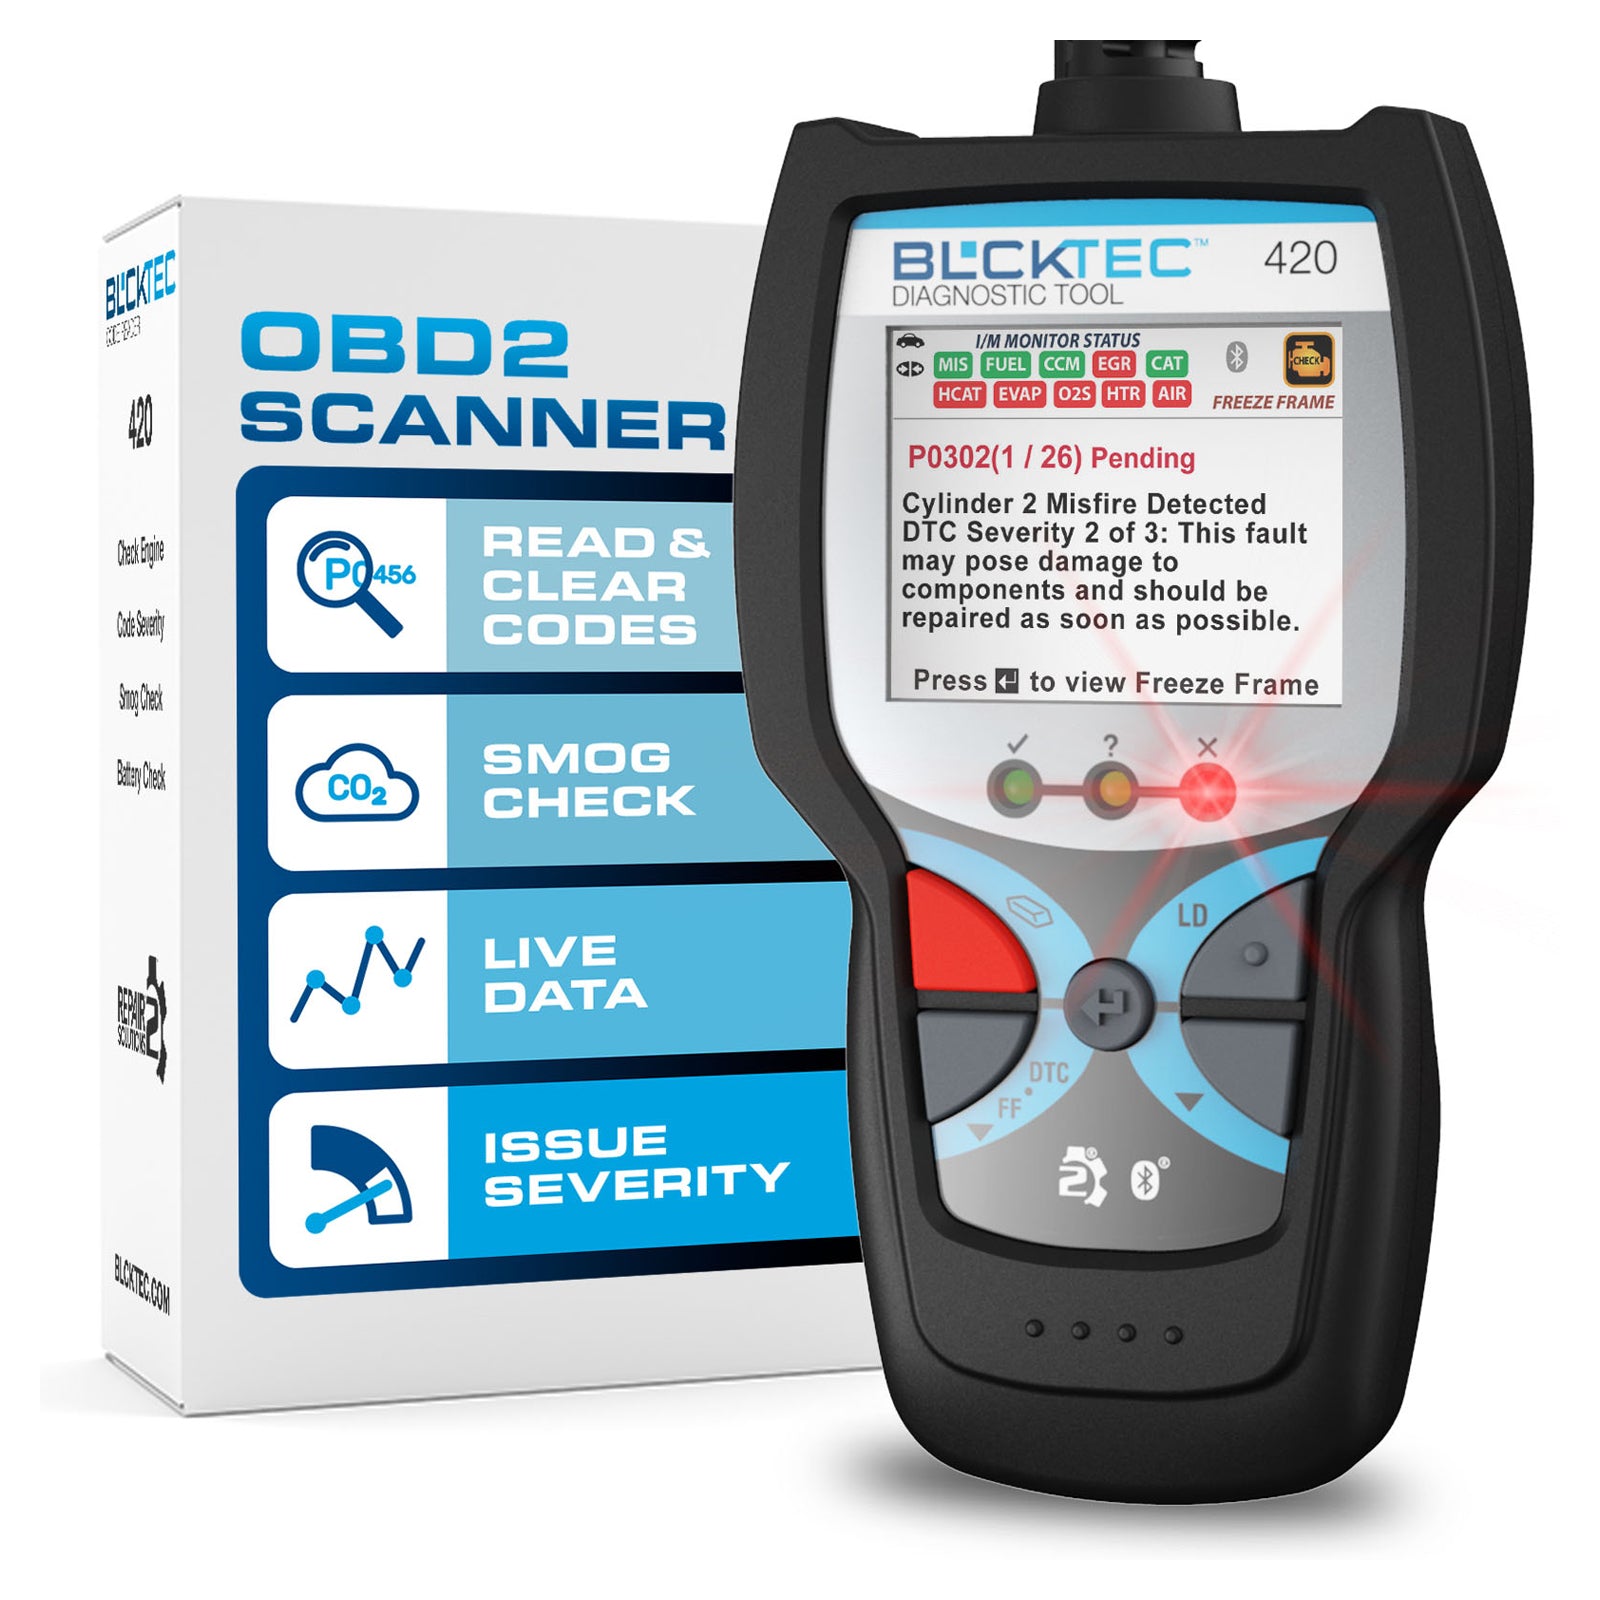 420 OBD2 Handheld Scanner | Decode & save thousands